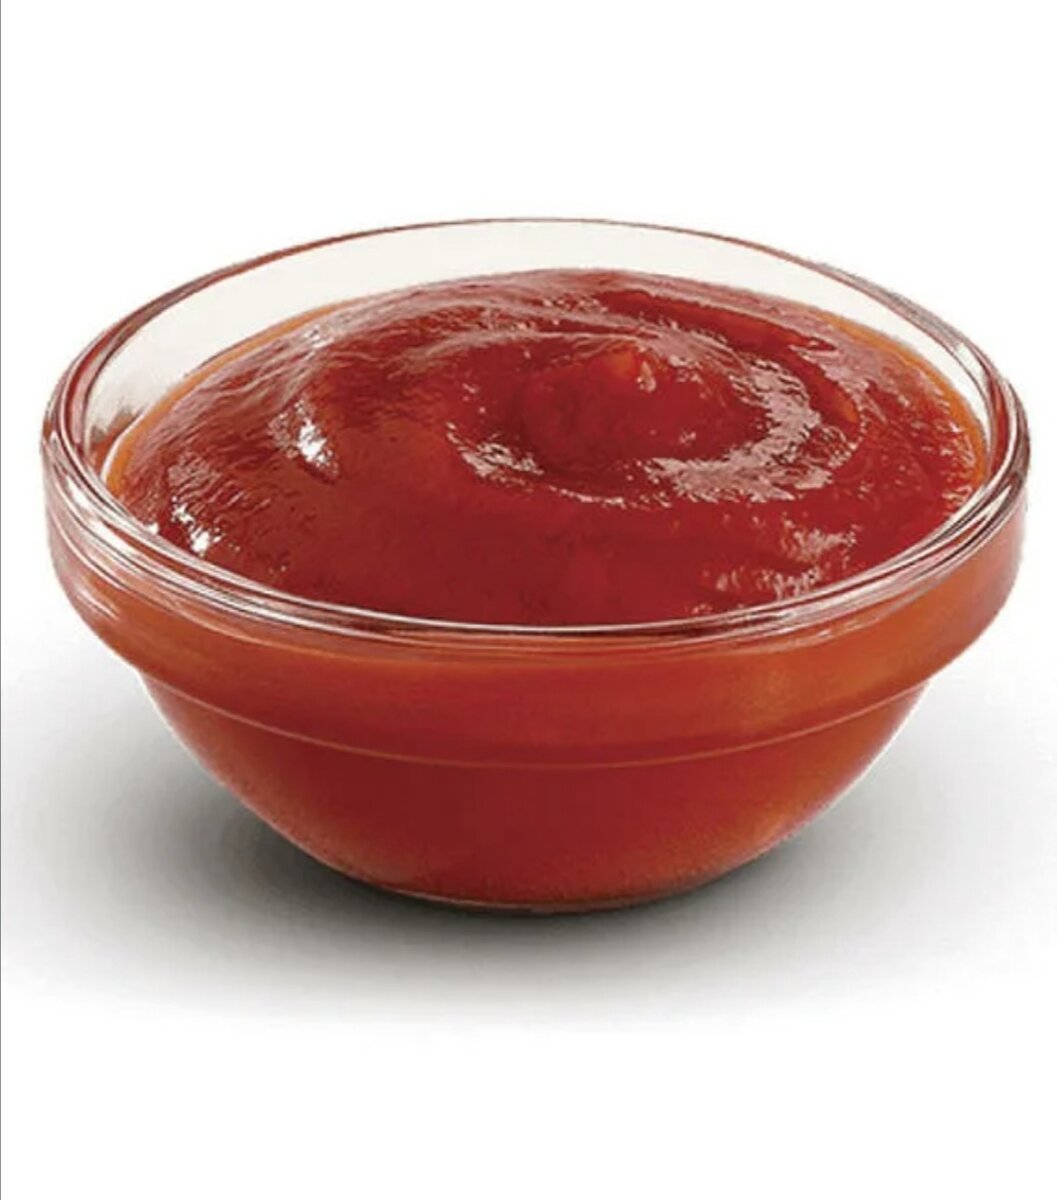 томатный соус к пицце фото 73